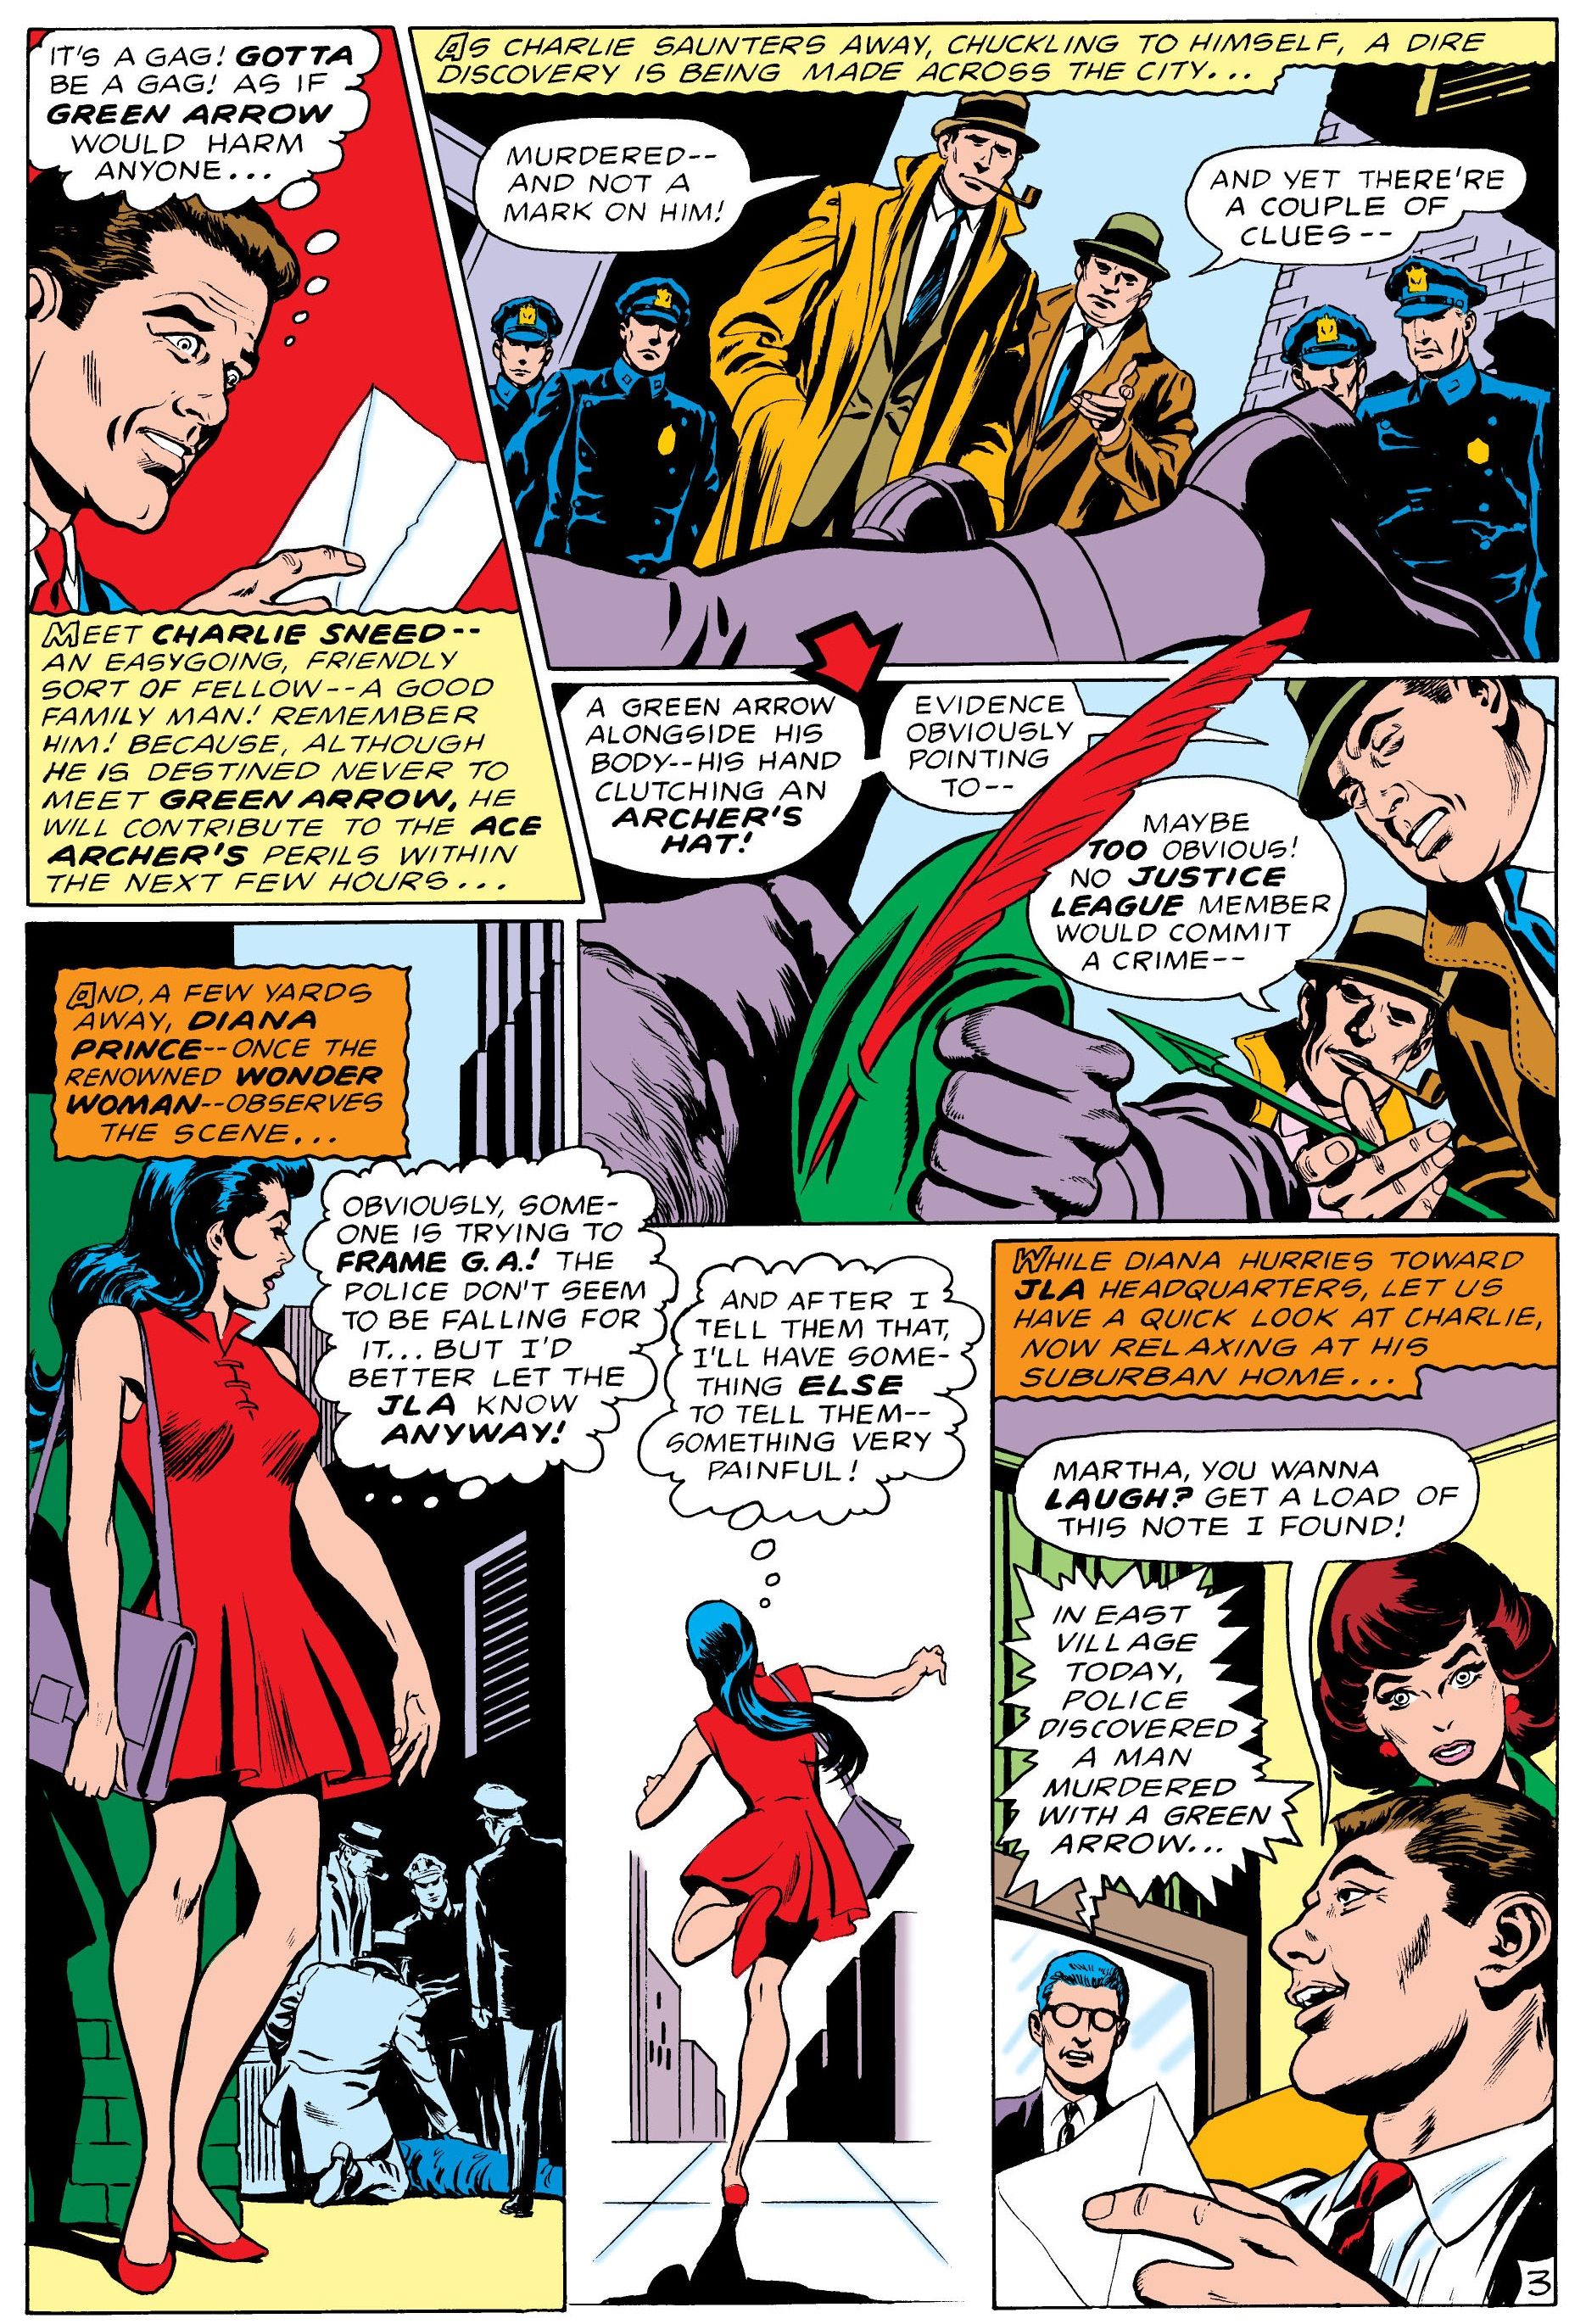 Diana se entera de que Green Arrow está acusada de asesinato